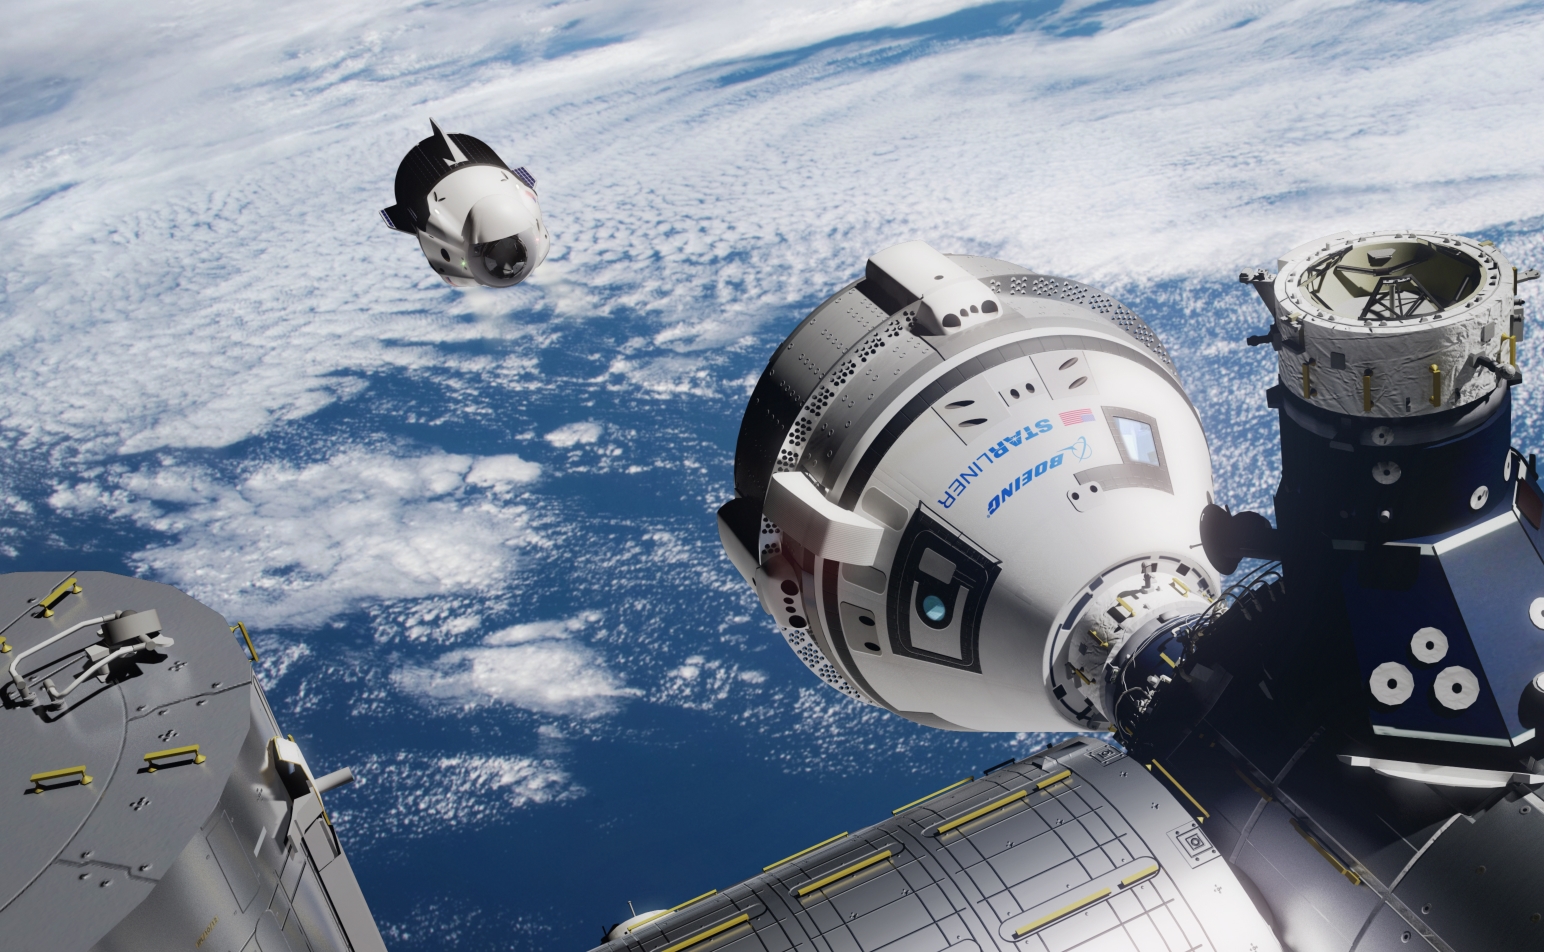 Первый полет пилотируемого космического корабля. Crew Dragon и CST-100 Starliner. SPACEX Crew Dragon МКС. Крю драгон пристыковался к МКС. Космический корабль CST-100 Starliner.